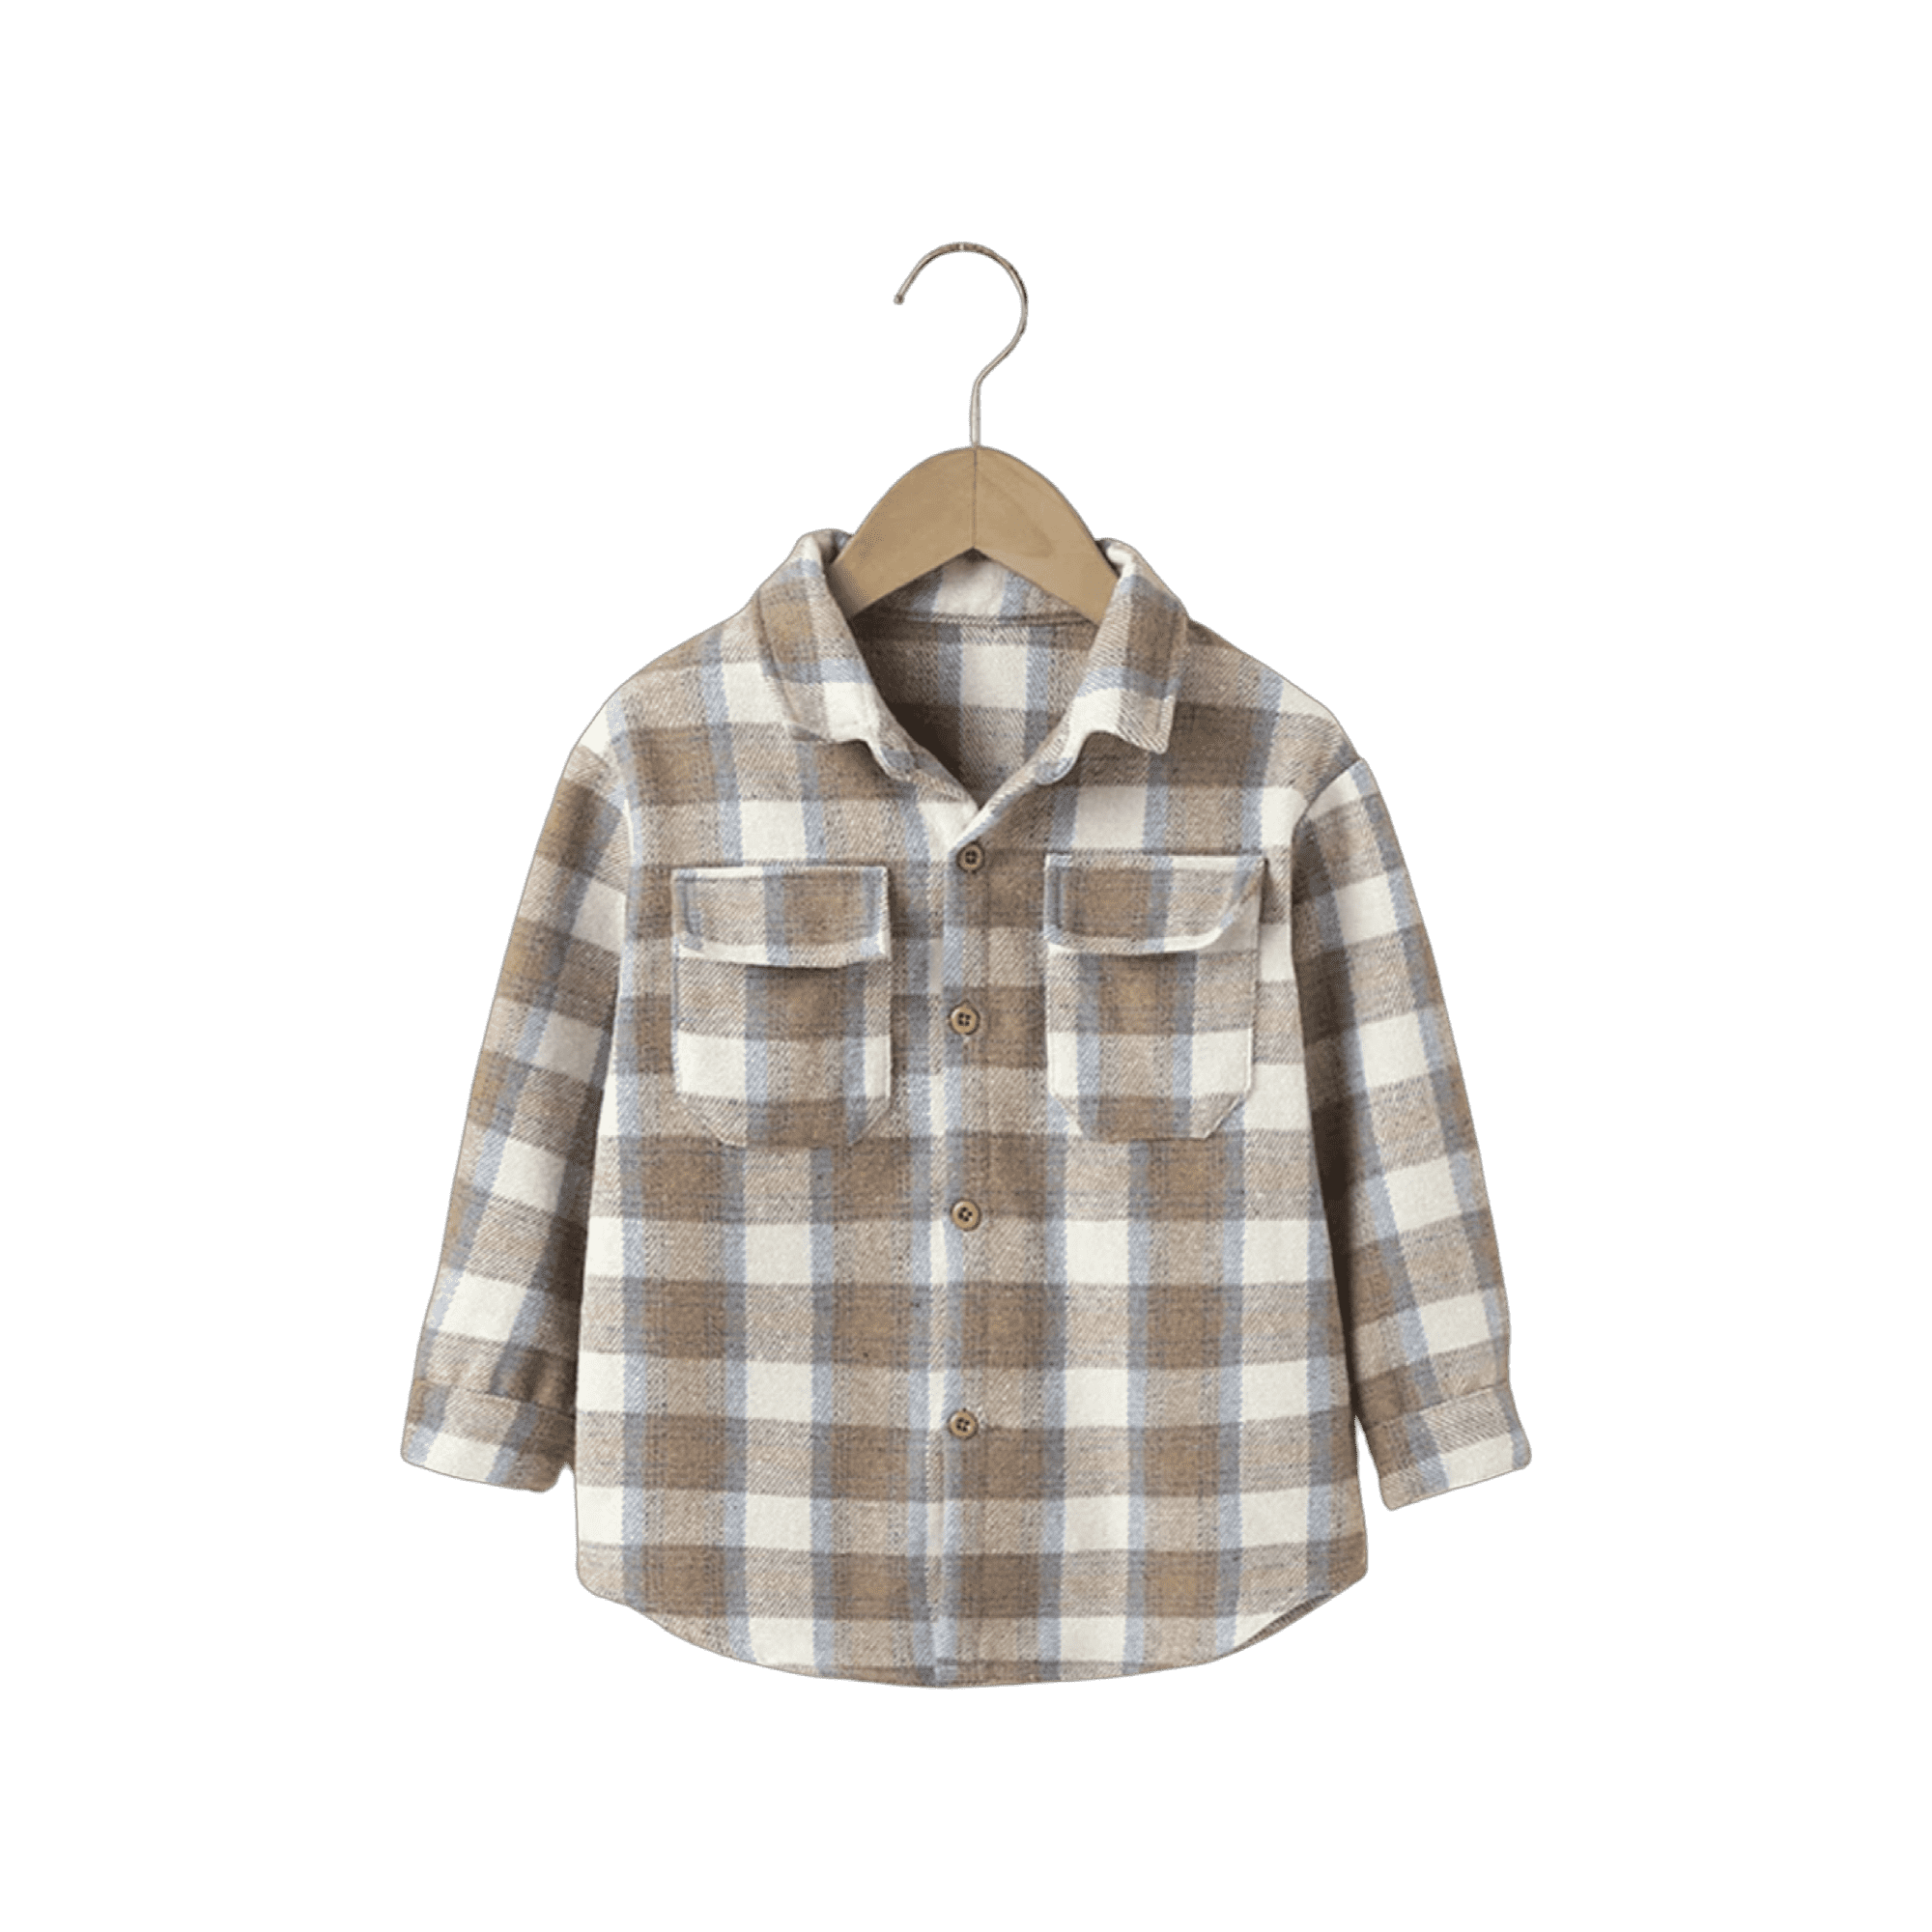 Boys Brushed Cotton Check Shirt Jacket - Natural.